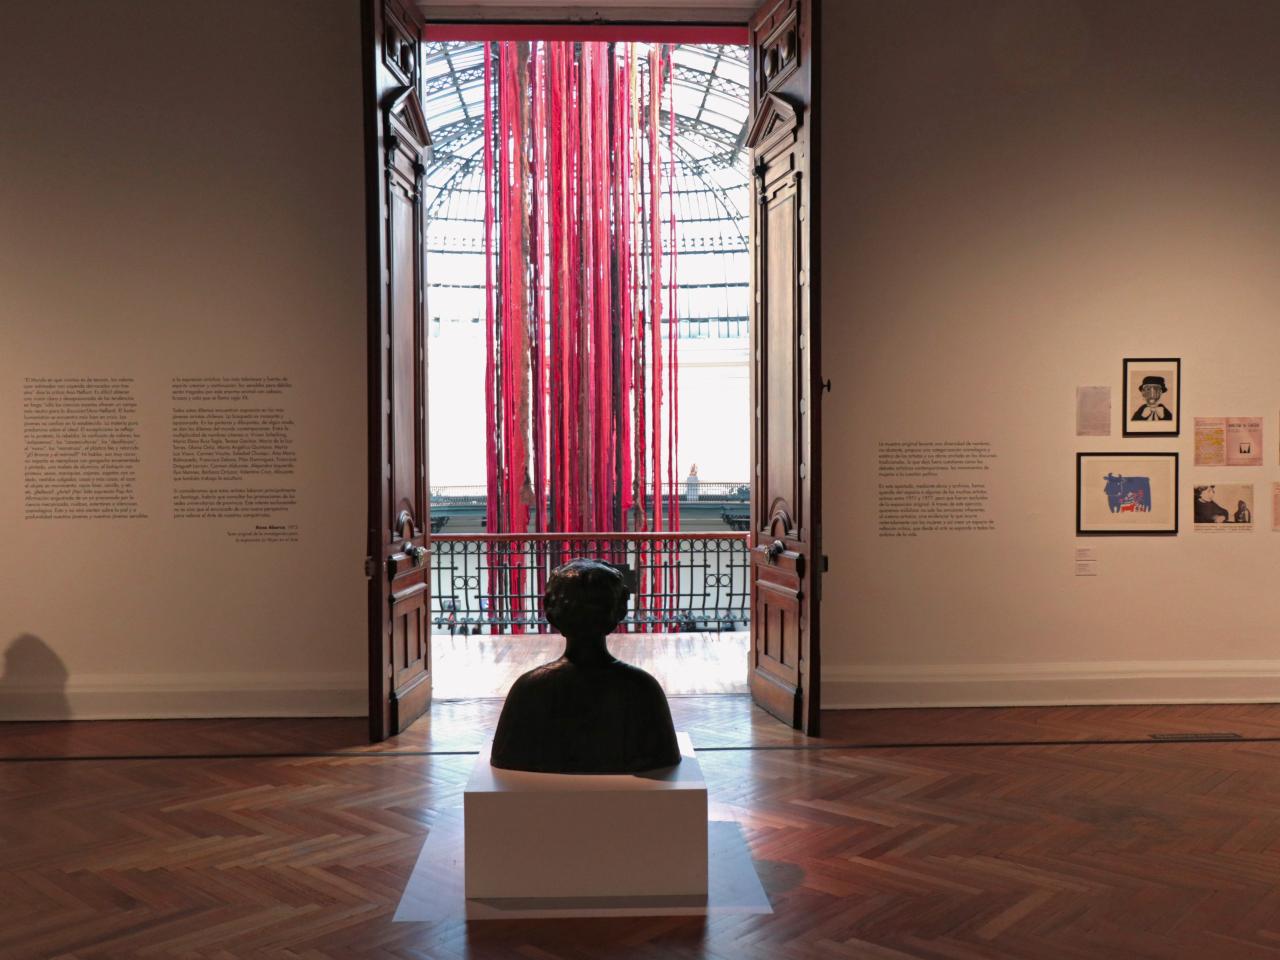 Se observa una escultura en medio de la sala y fuera de esta se encuentran telas colgando de colores rojo y café